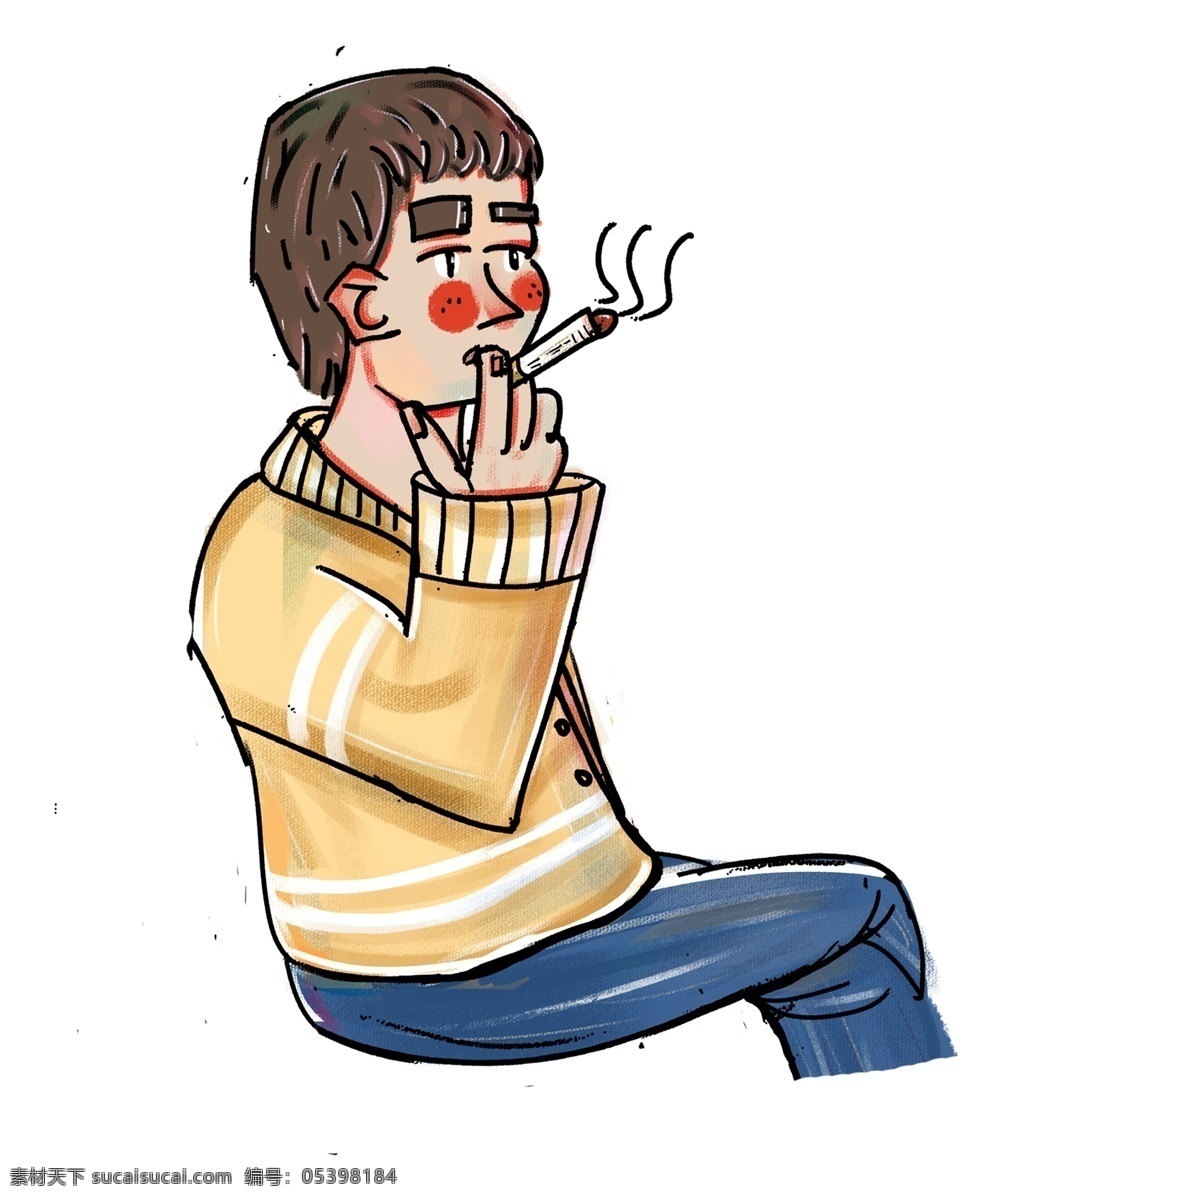 卡通 简约 抽烟 男孩 装饰 插画元素 抽烟的男孩 免扣素材 人物